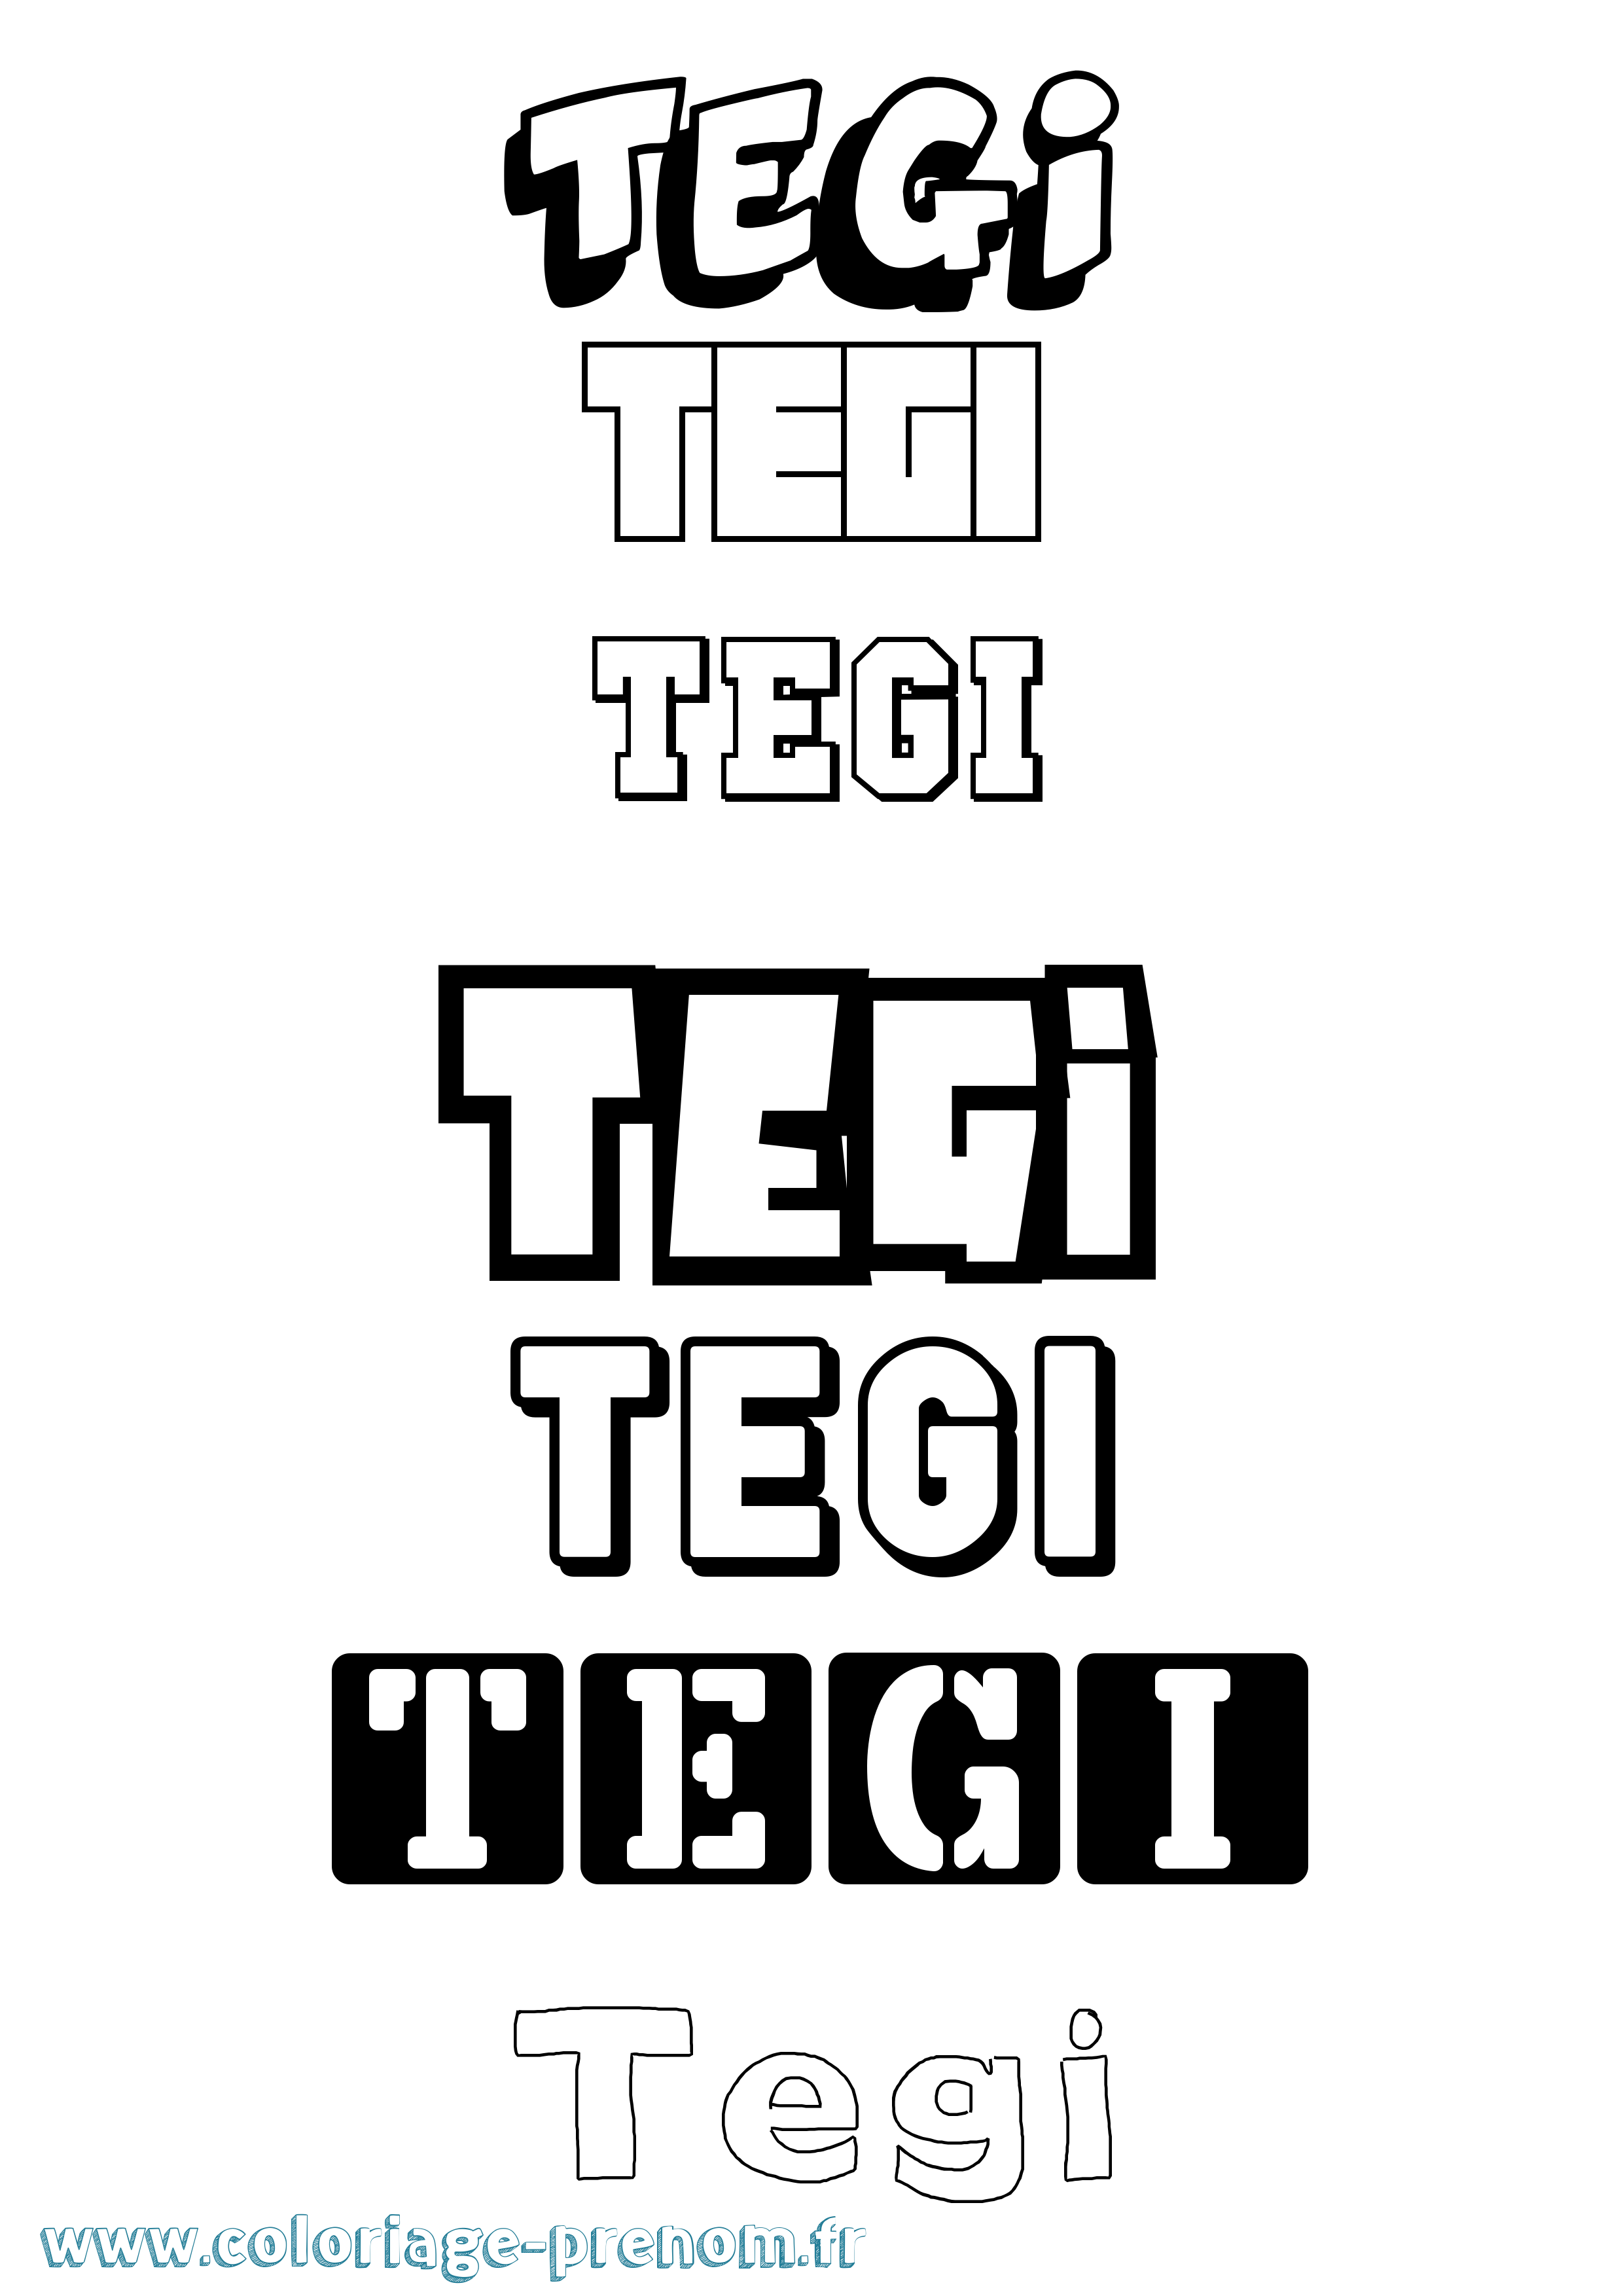 Coloriage prénom Tegi Simple